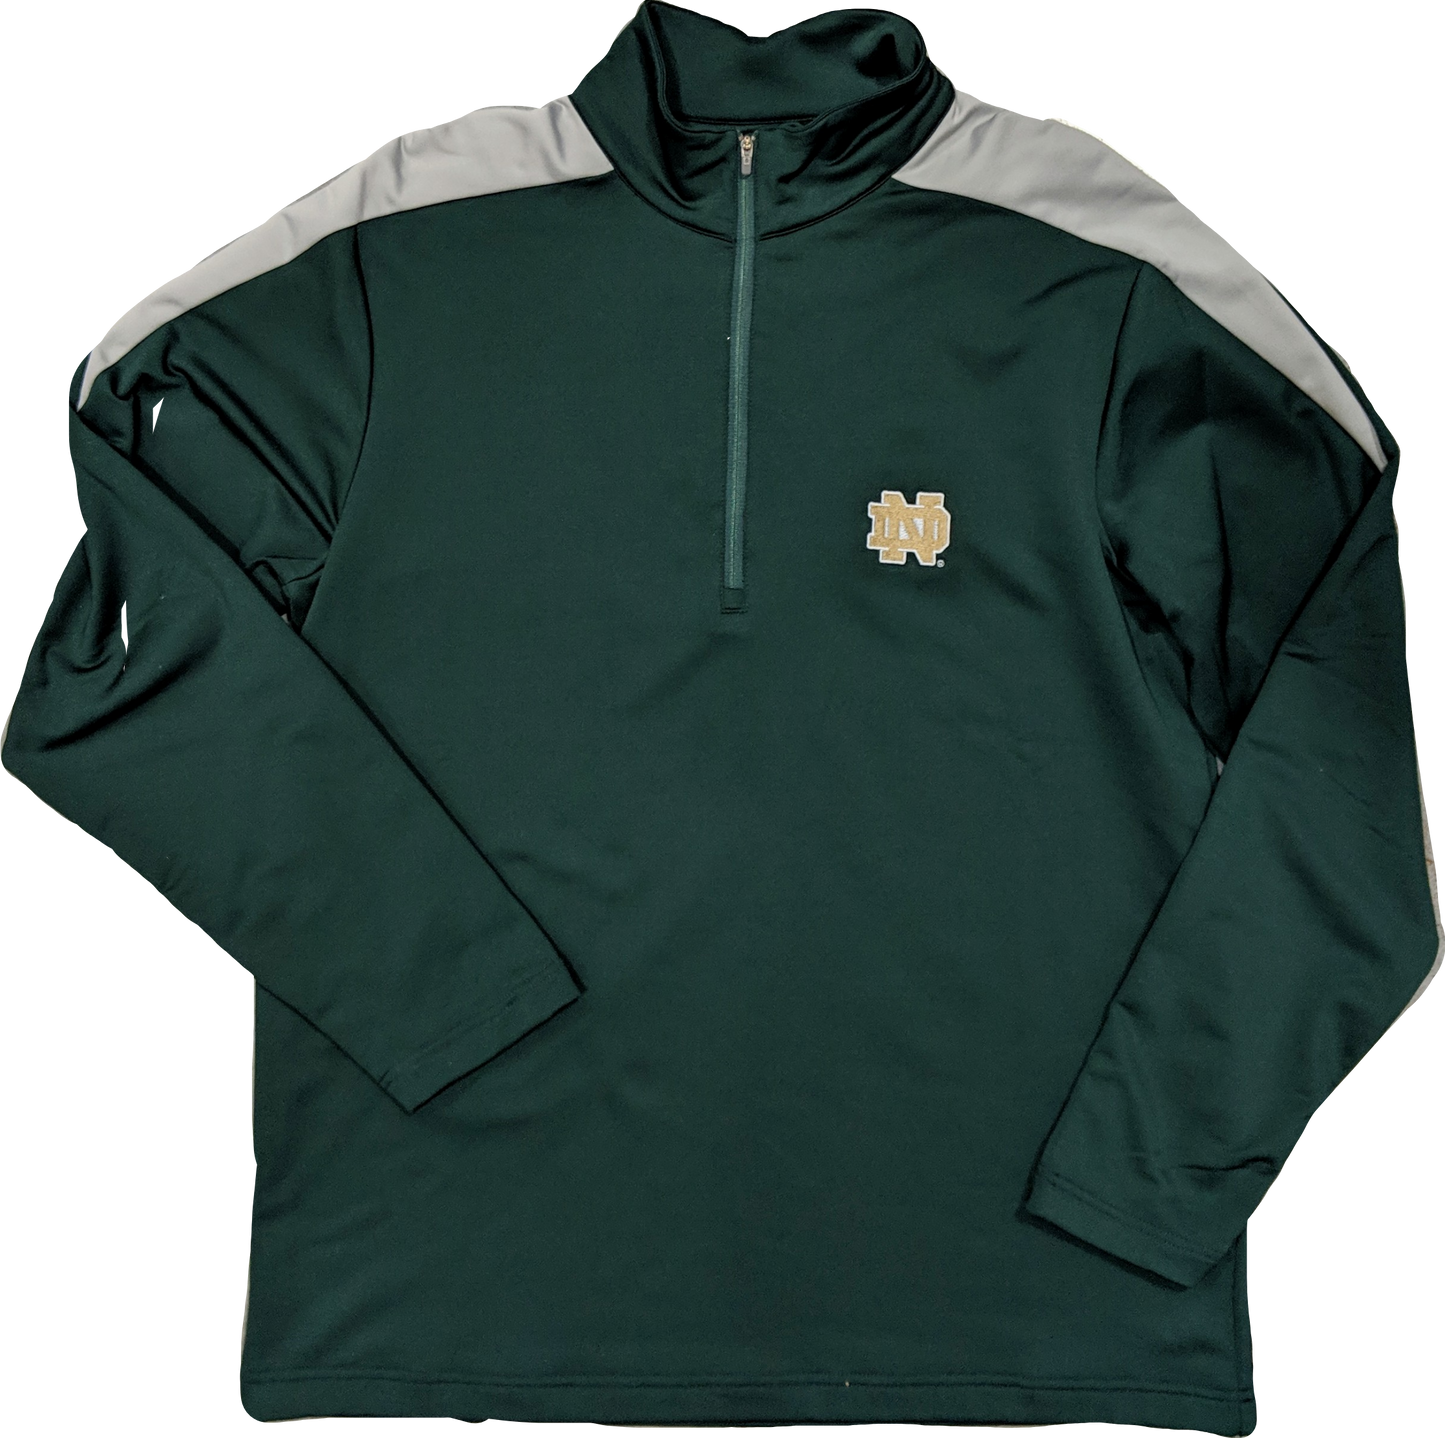 Men's NCAA Notre Dame Fighting Irish Green Succeed 1/4 Zip